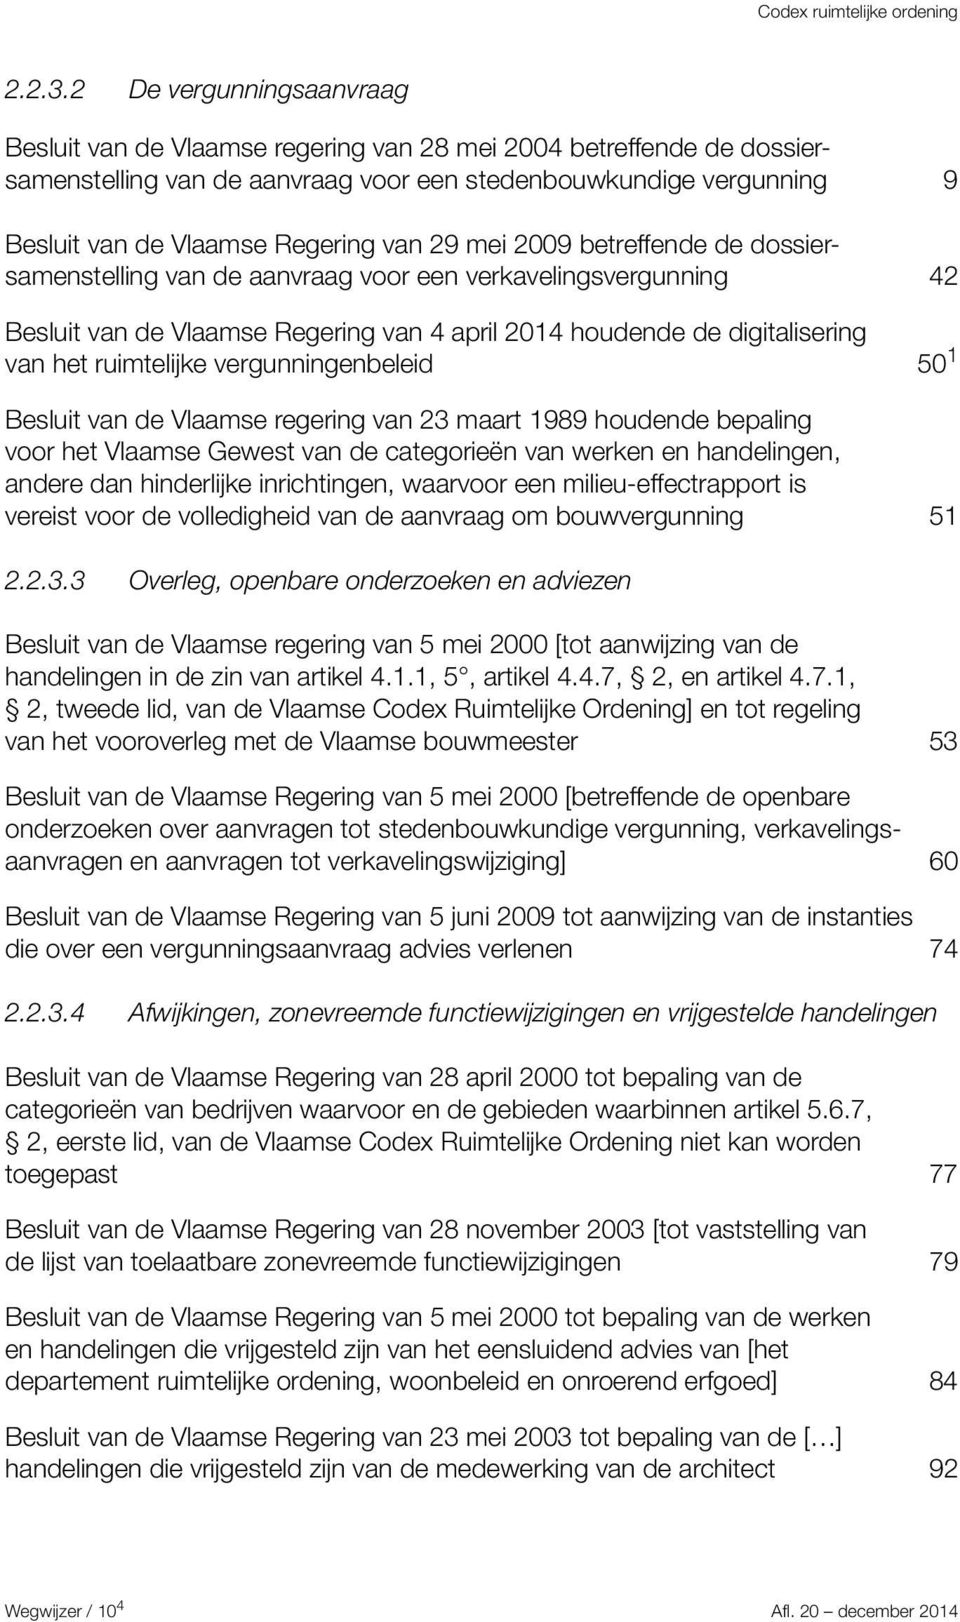 van 29 mei 2009 betreffende de dossiersamenstelling van de aanvraag voor een verkavelingsvergunning 42 Besluit van de Vlaamse Regering van 4 april 2014 houdende de digitalisering van het ruimtelijke